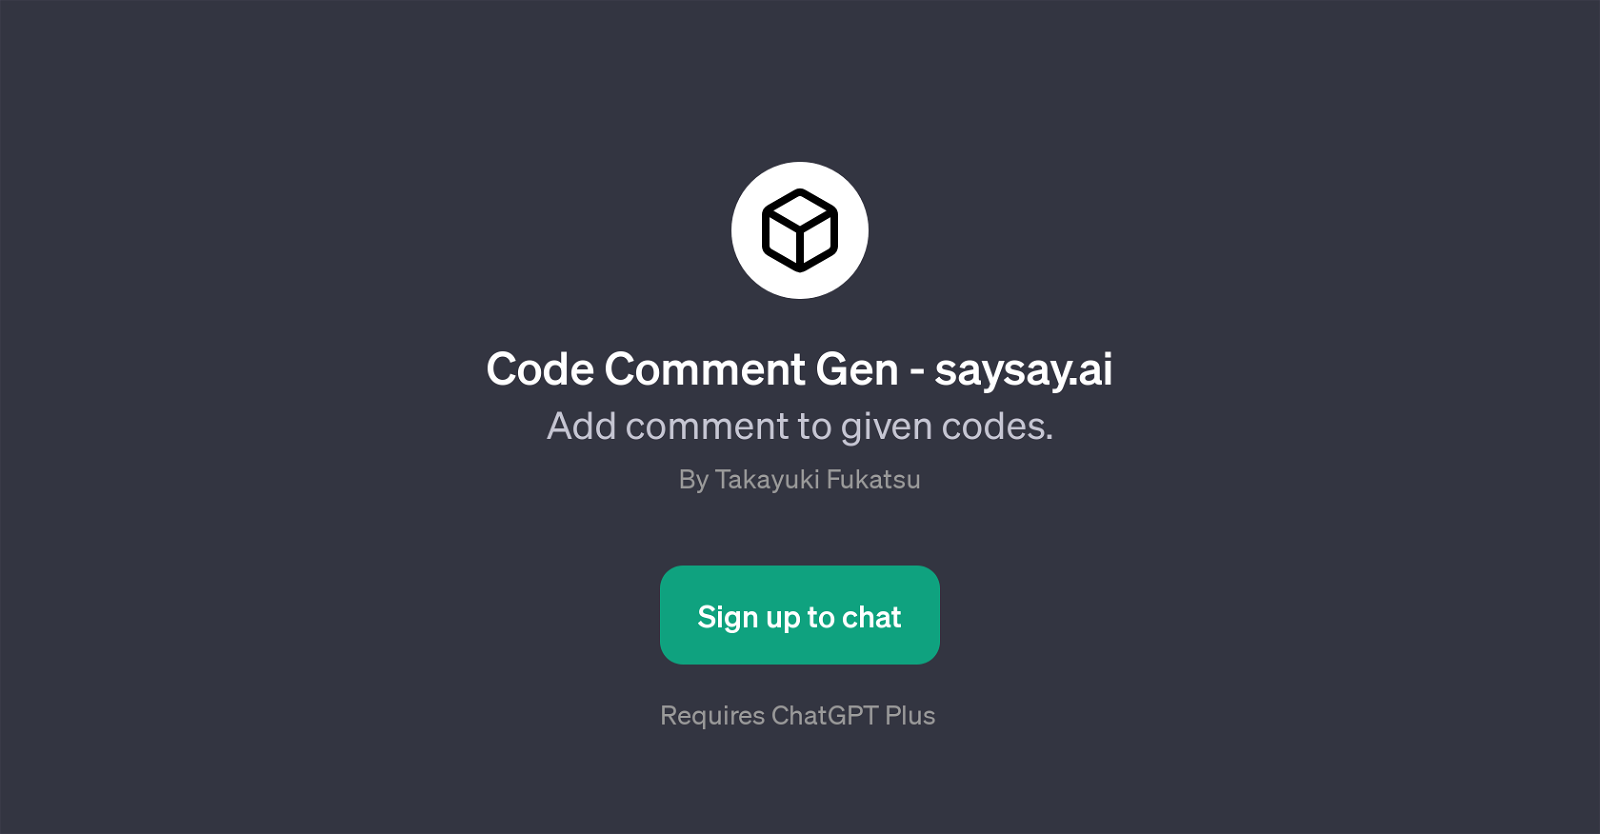 Code Comment Gen website